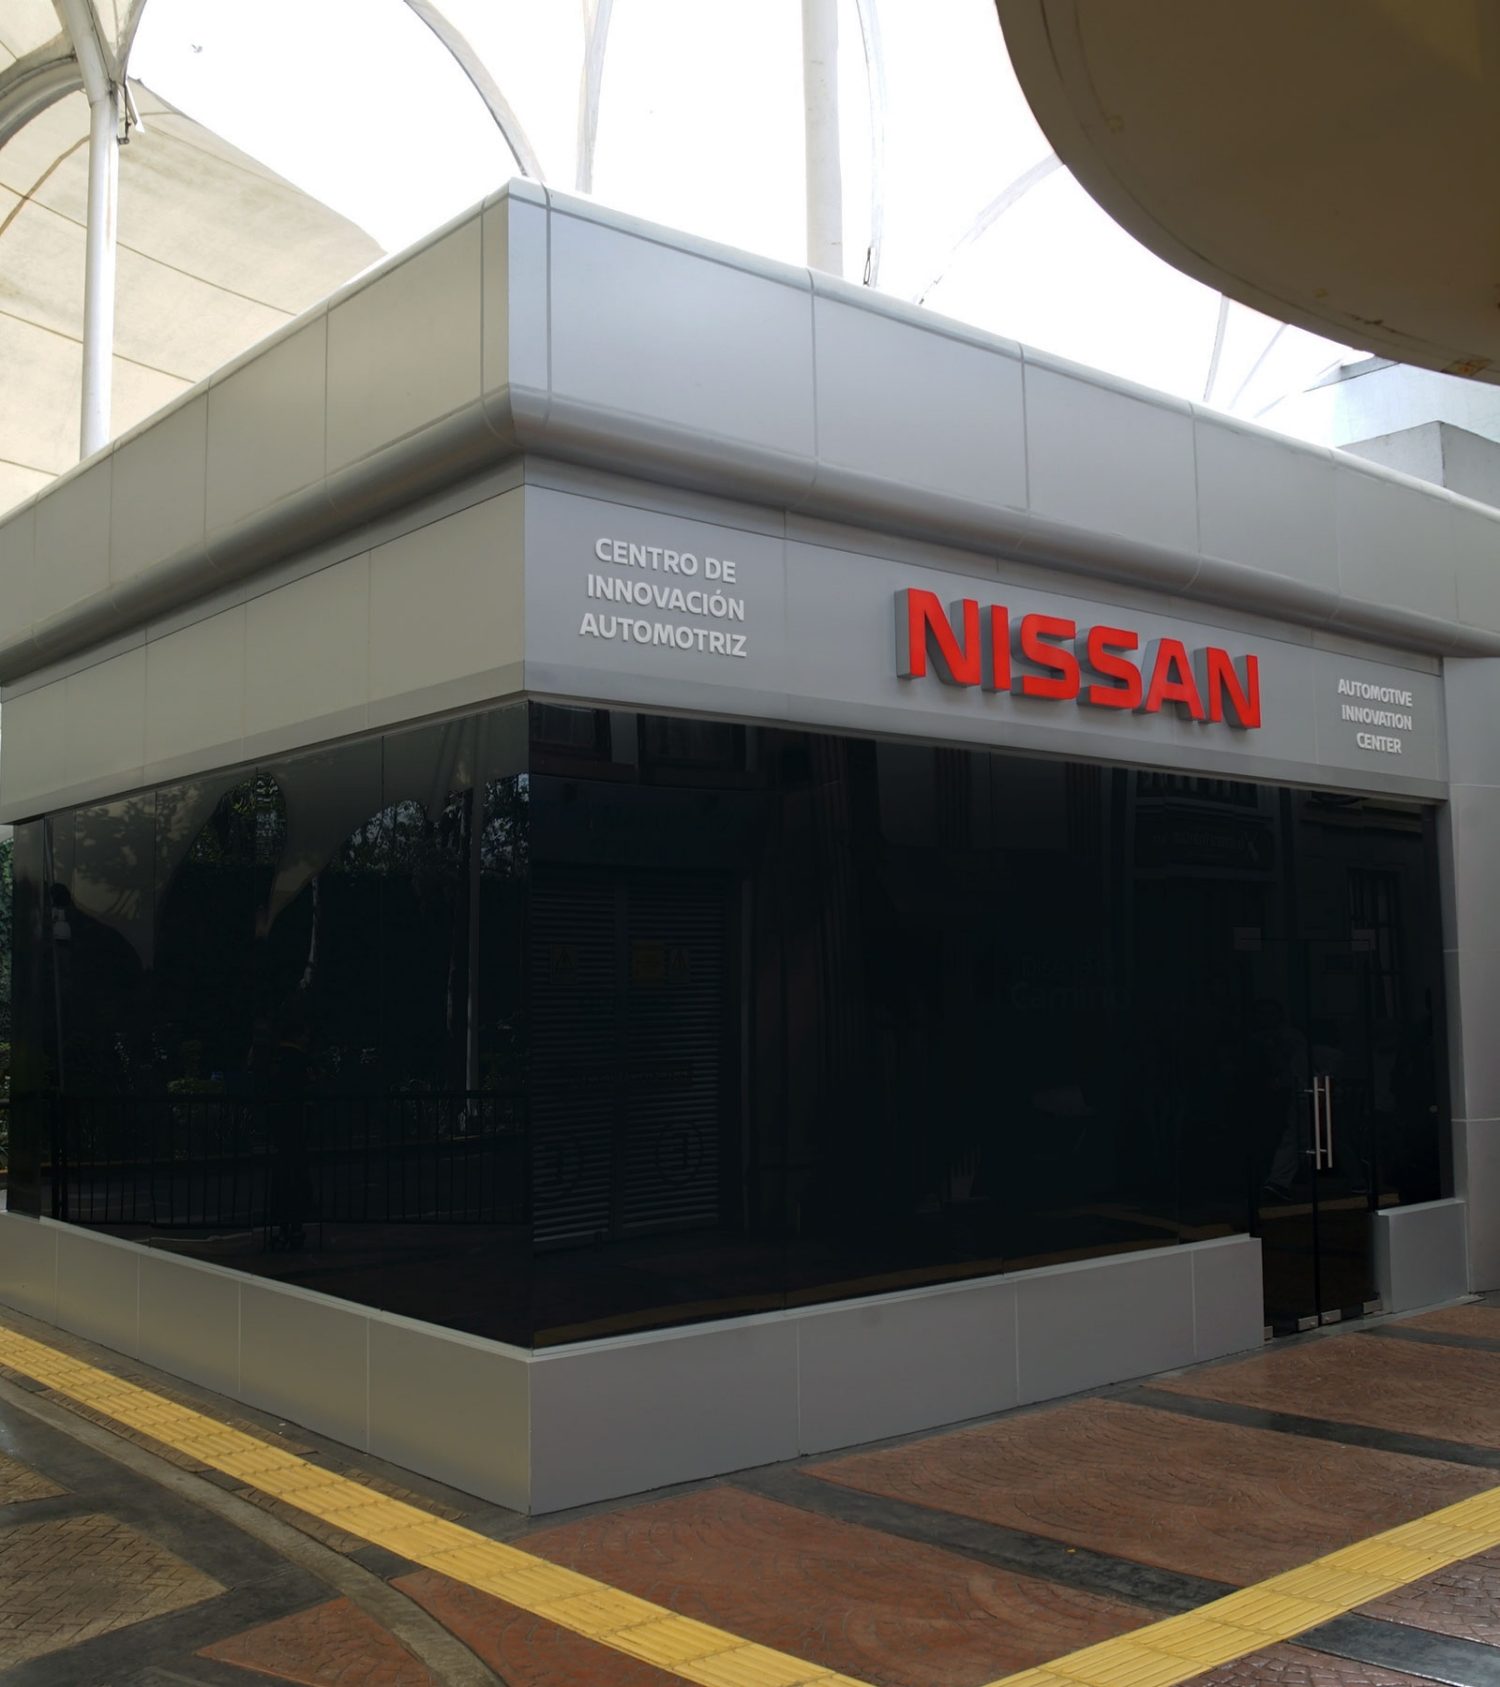 Centro de inovación automotriz Nissan